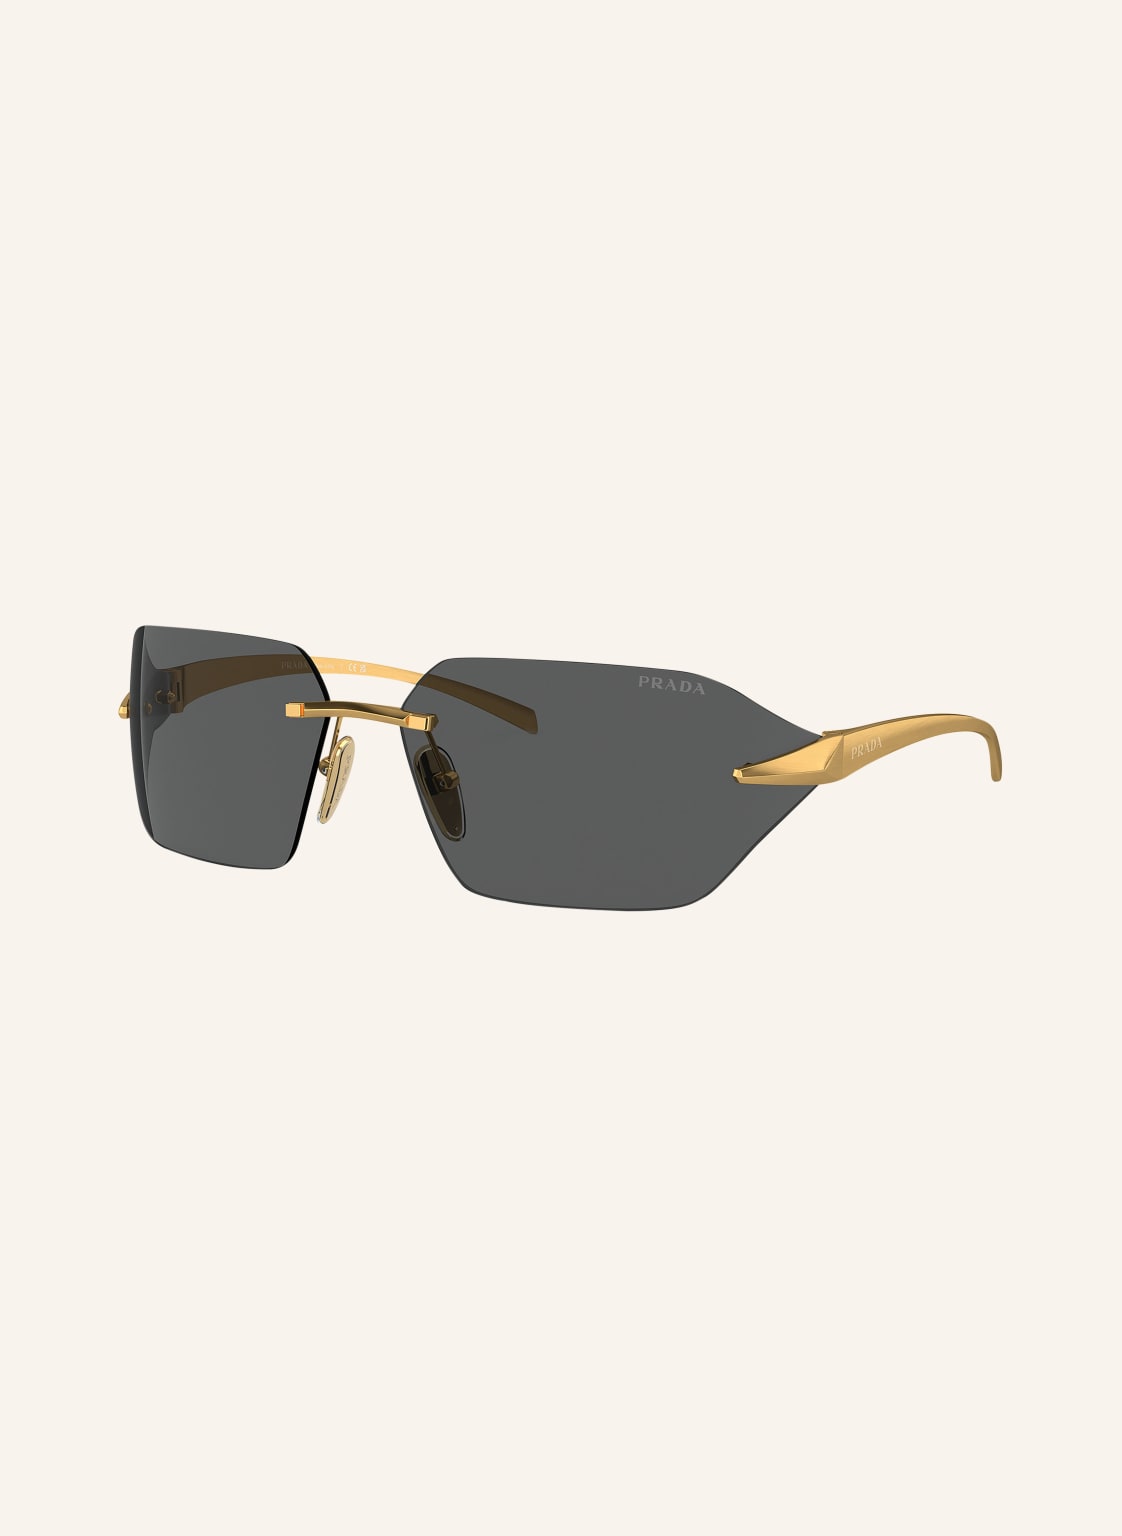 Prada Sonnenbrille Pr a56s gold von Prada